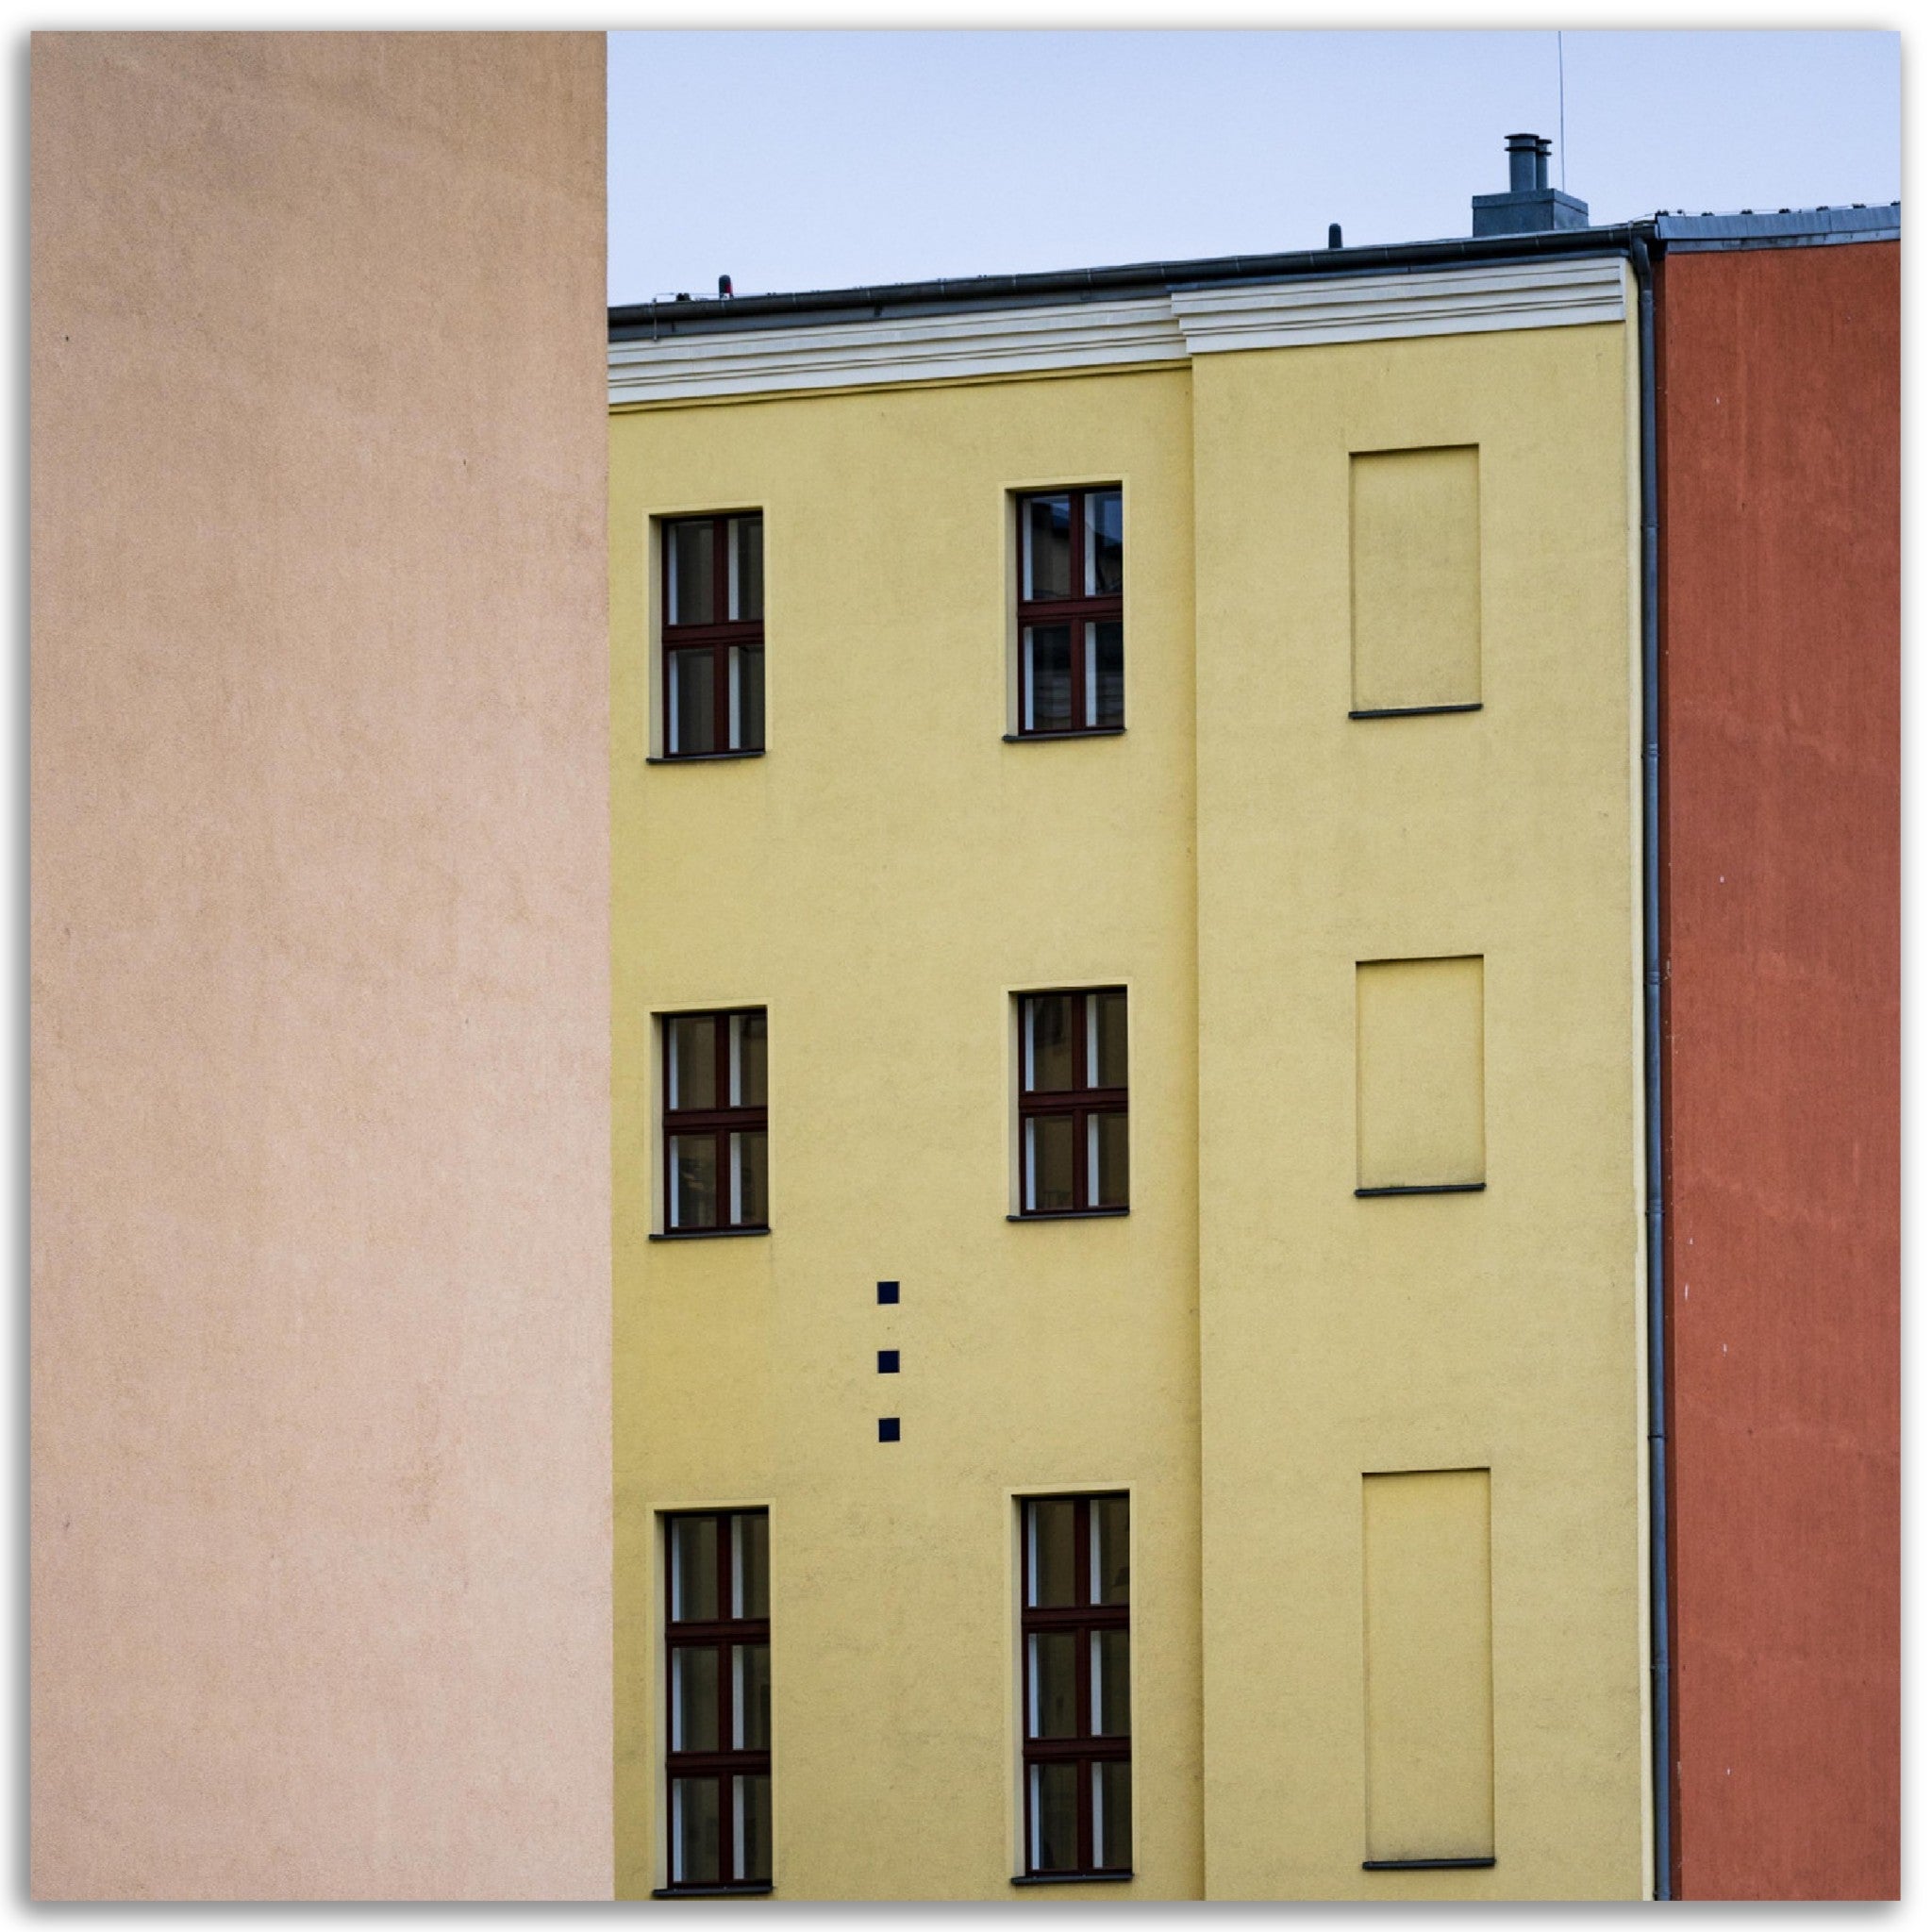 Poster métallique - Les bâtiments colorés de Berlin – Photo d'art – Décoration murale premium. La boutique de posters, créée par un photographe français, vous propose le meilleur de la photographie combiné à la décoration murale pour transformer votre intérieur en une galerie d'art intemporelle.